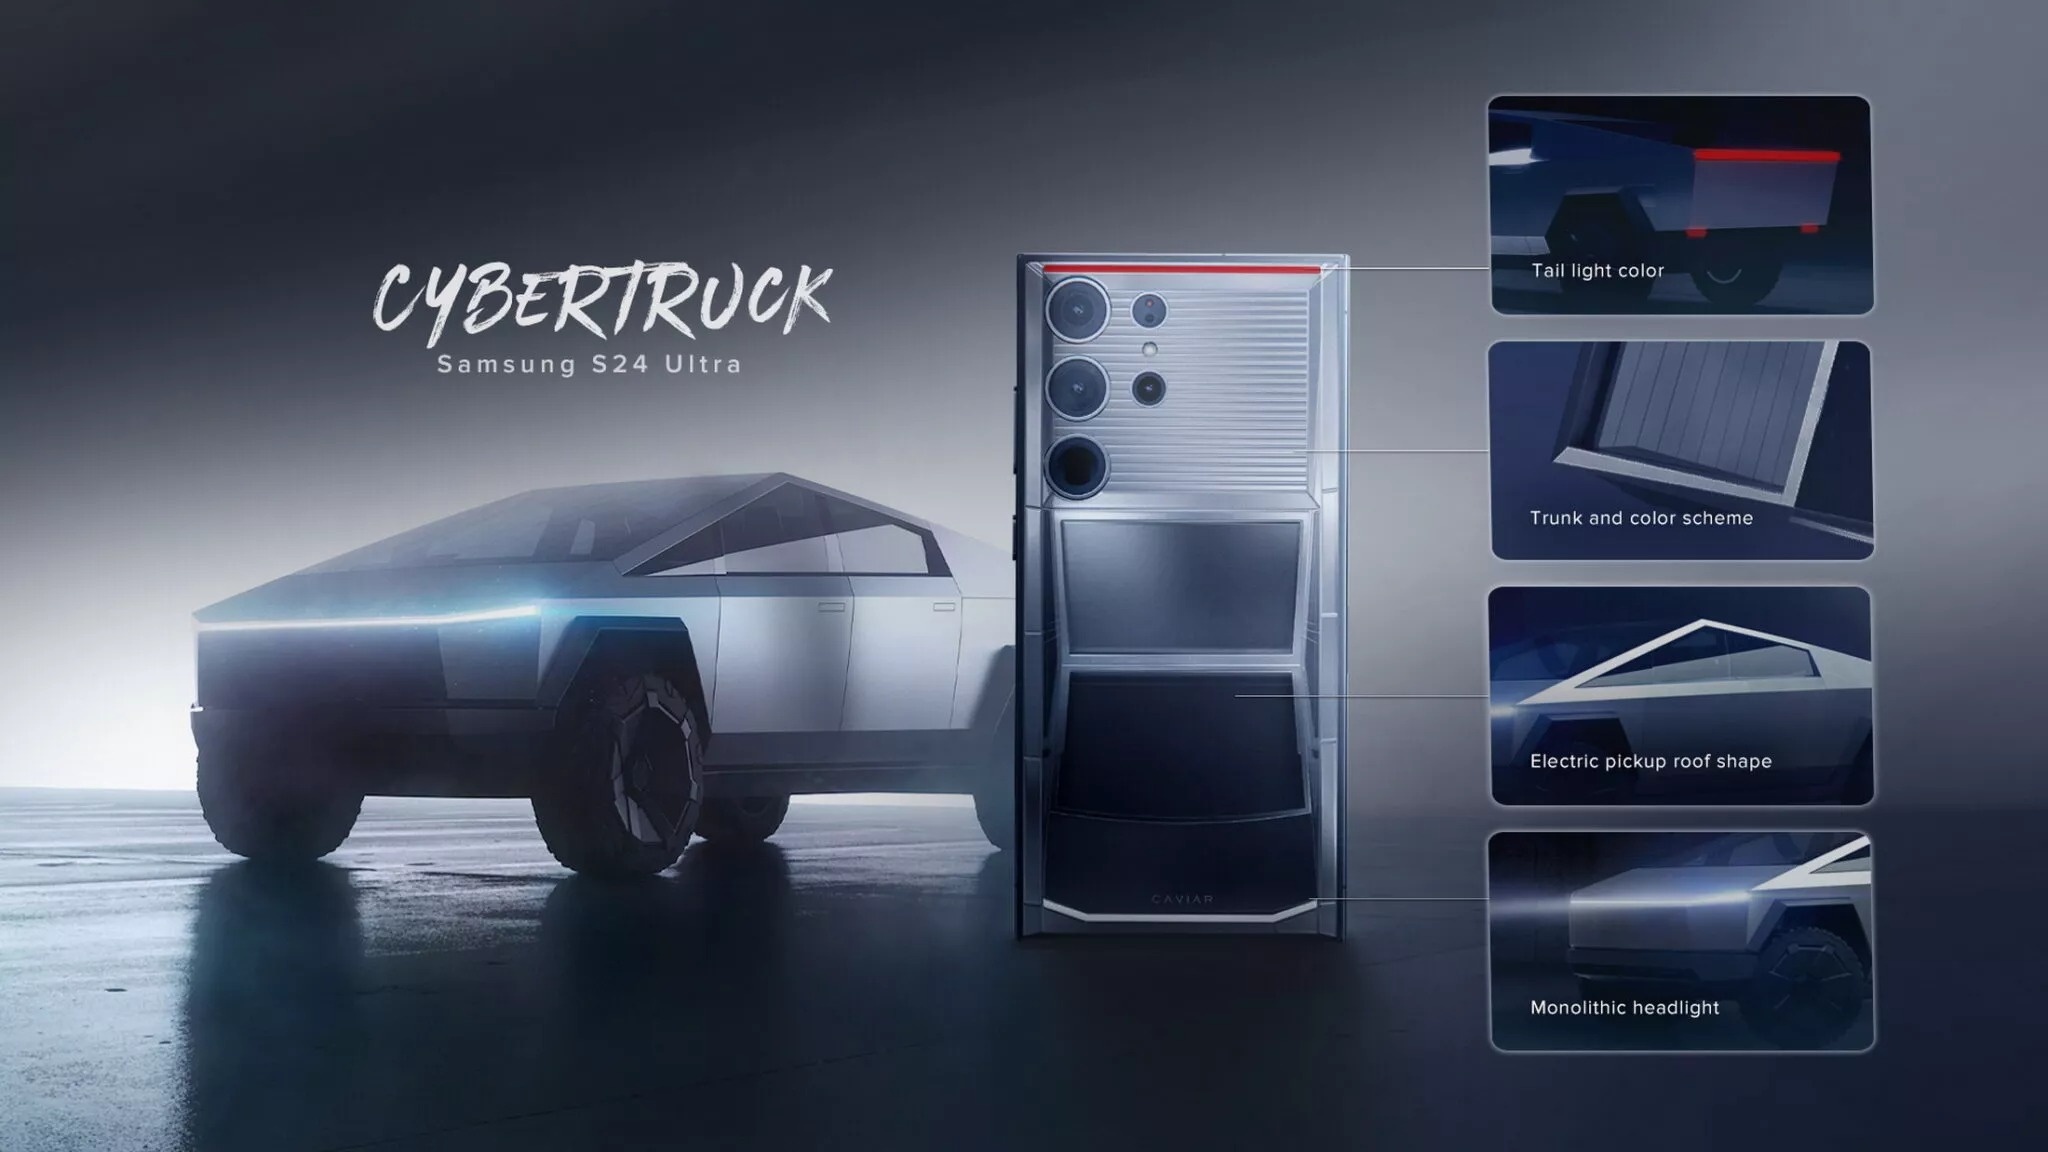 Lấy cảm hứng từ Tesla Cybertruck, điện thoại này có giá gần 9.000 USD - ảnh 6